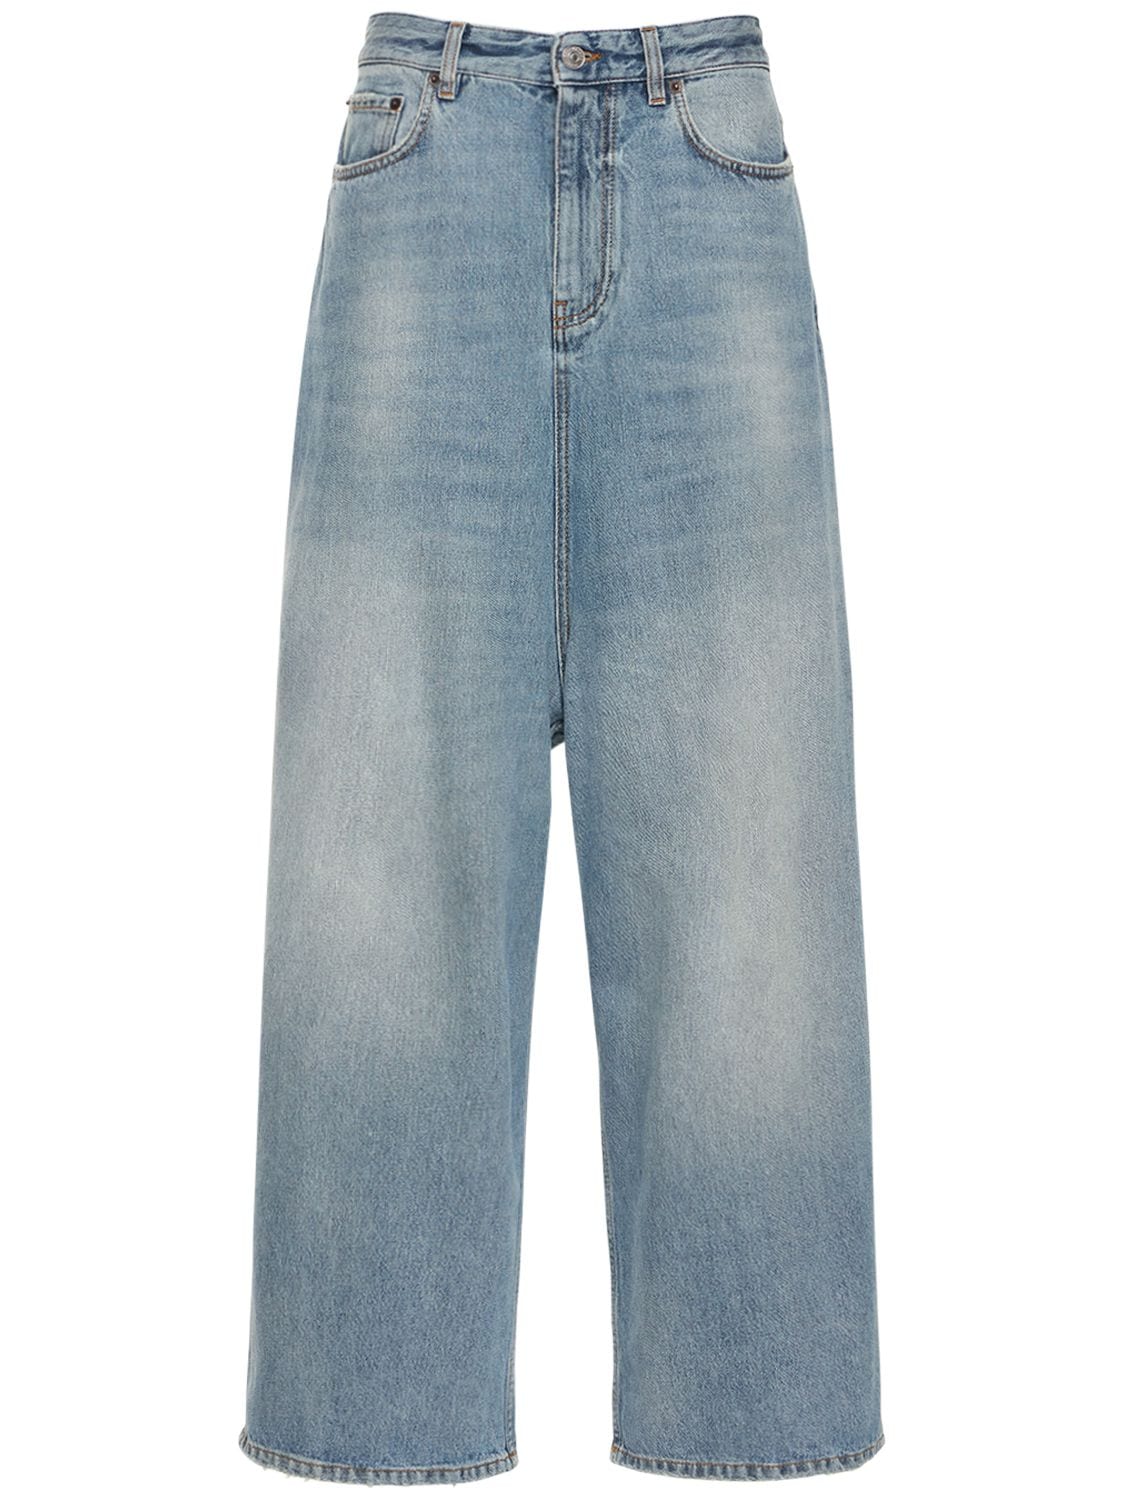 Low-crotch Vintage Denim Jeans